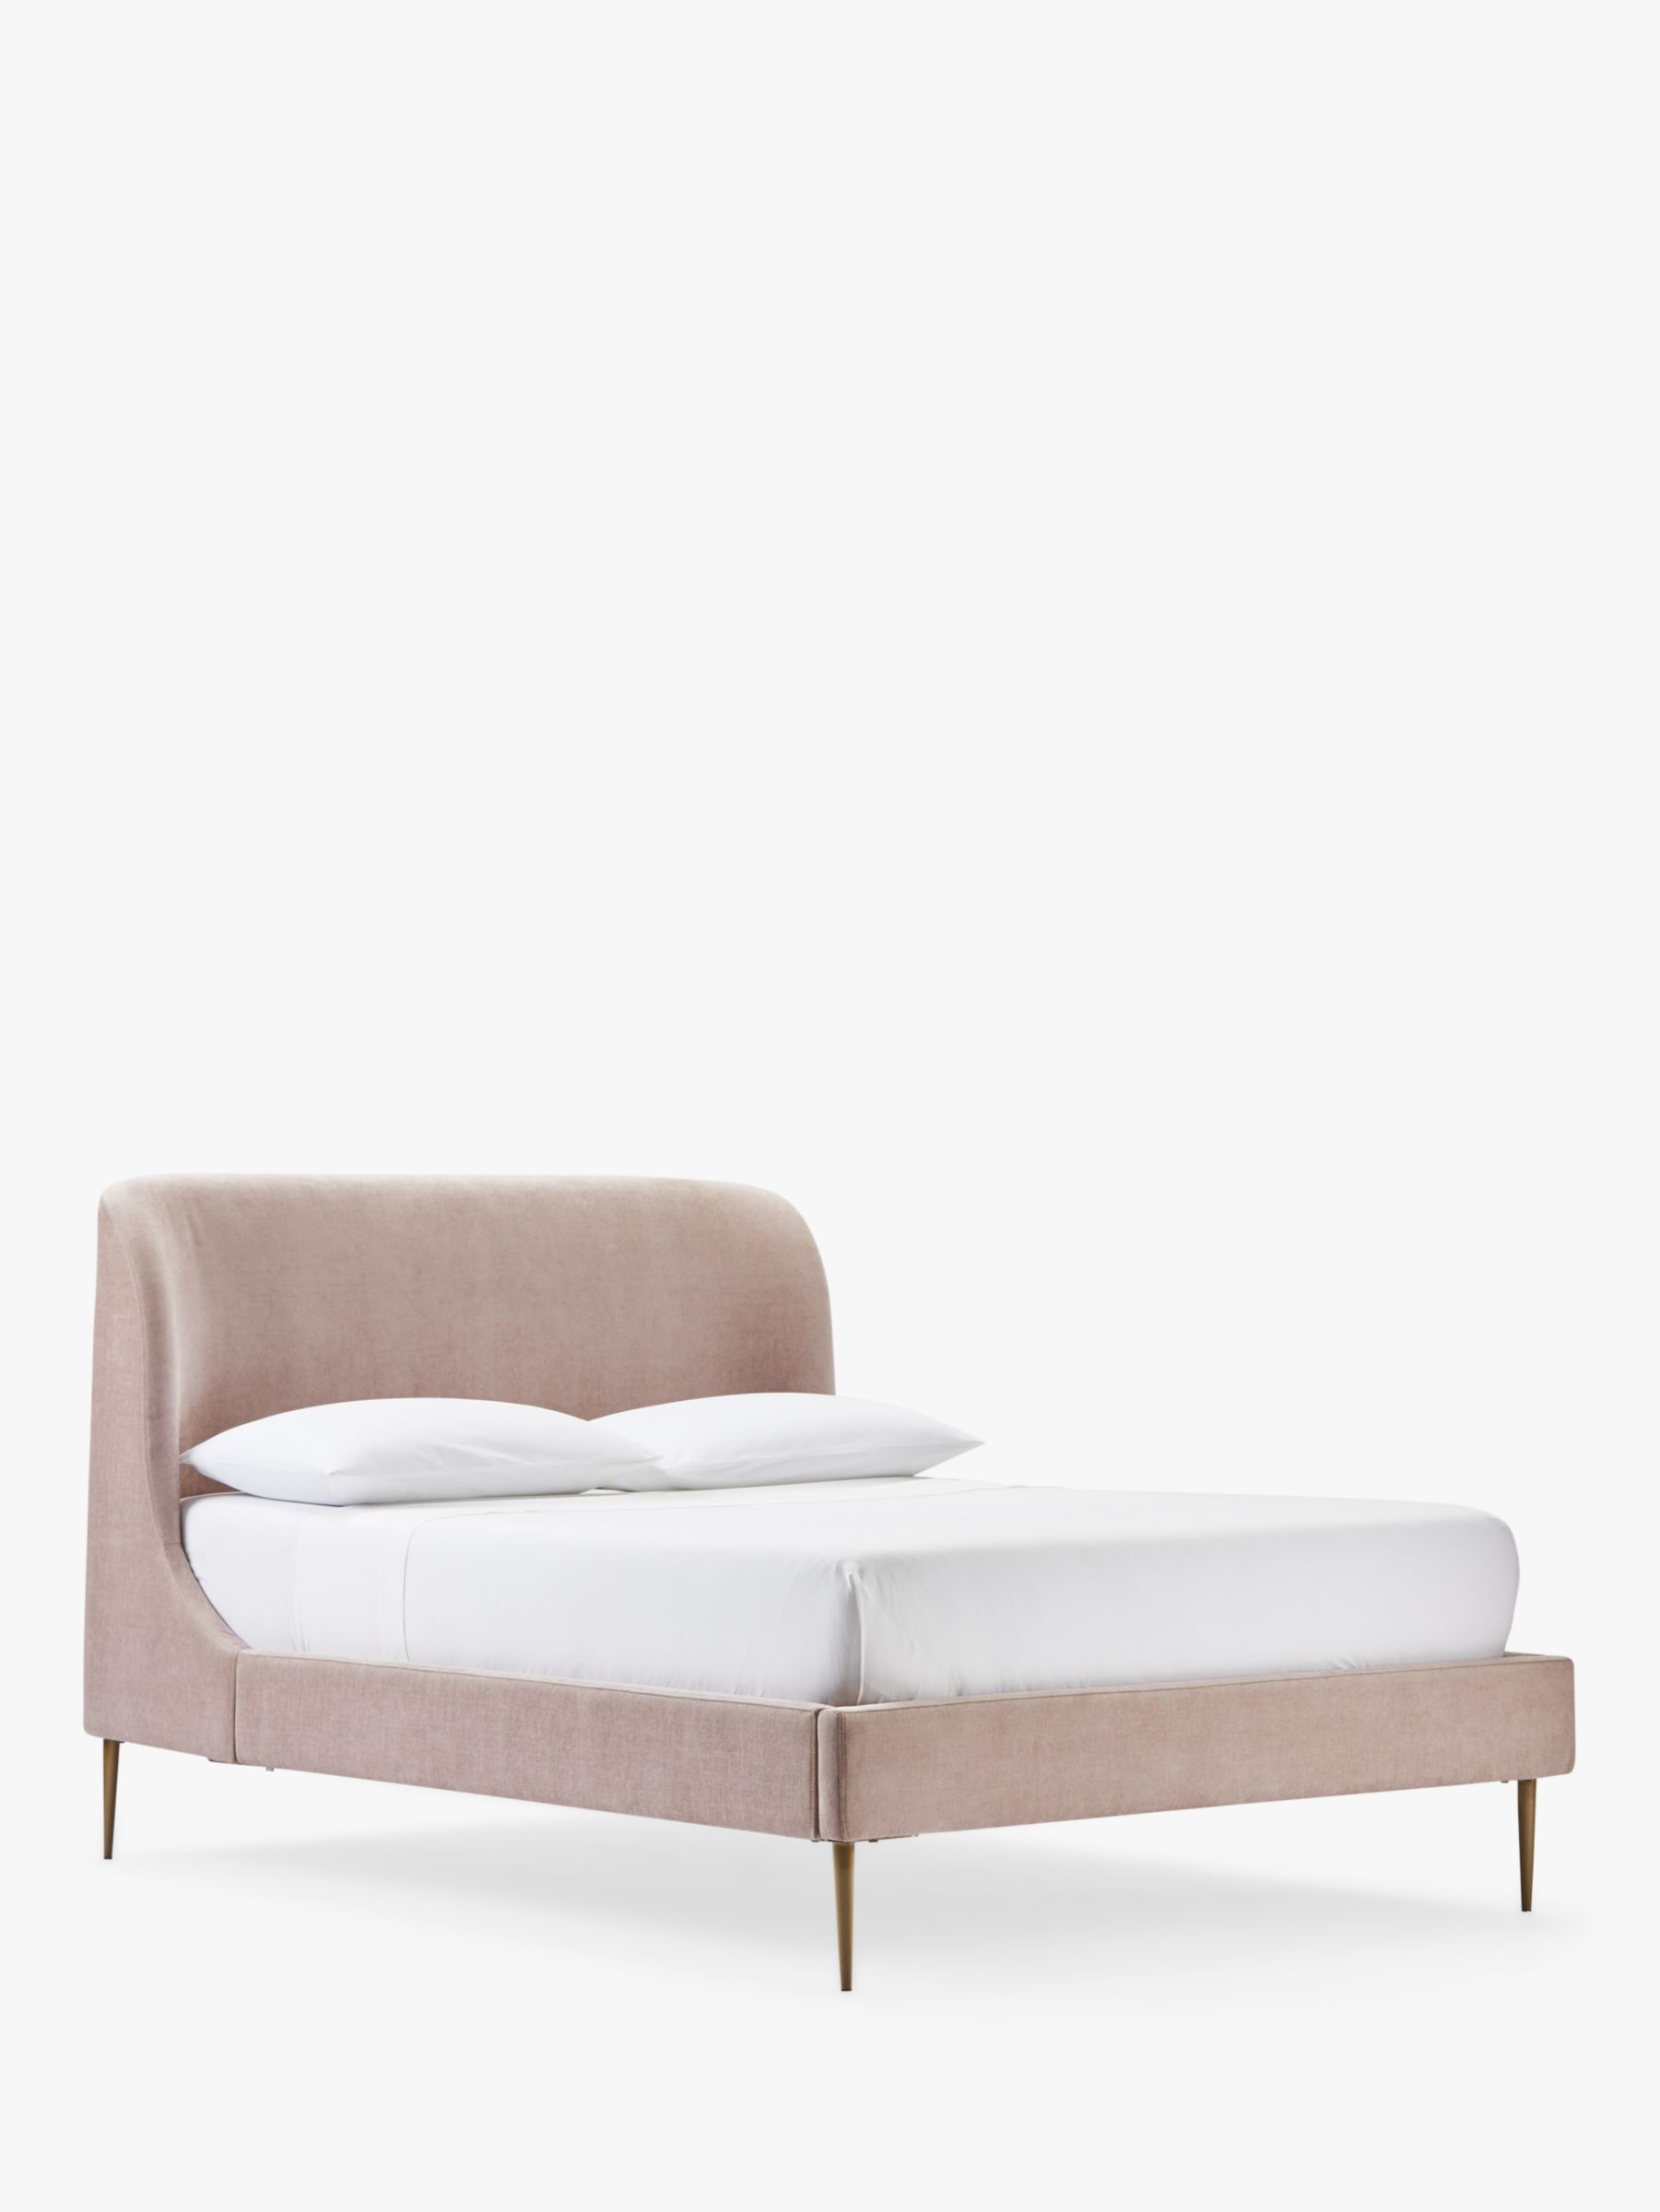 West Elm Lana Upholstered Bed Frame, Pink King Size Bed Frame